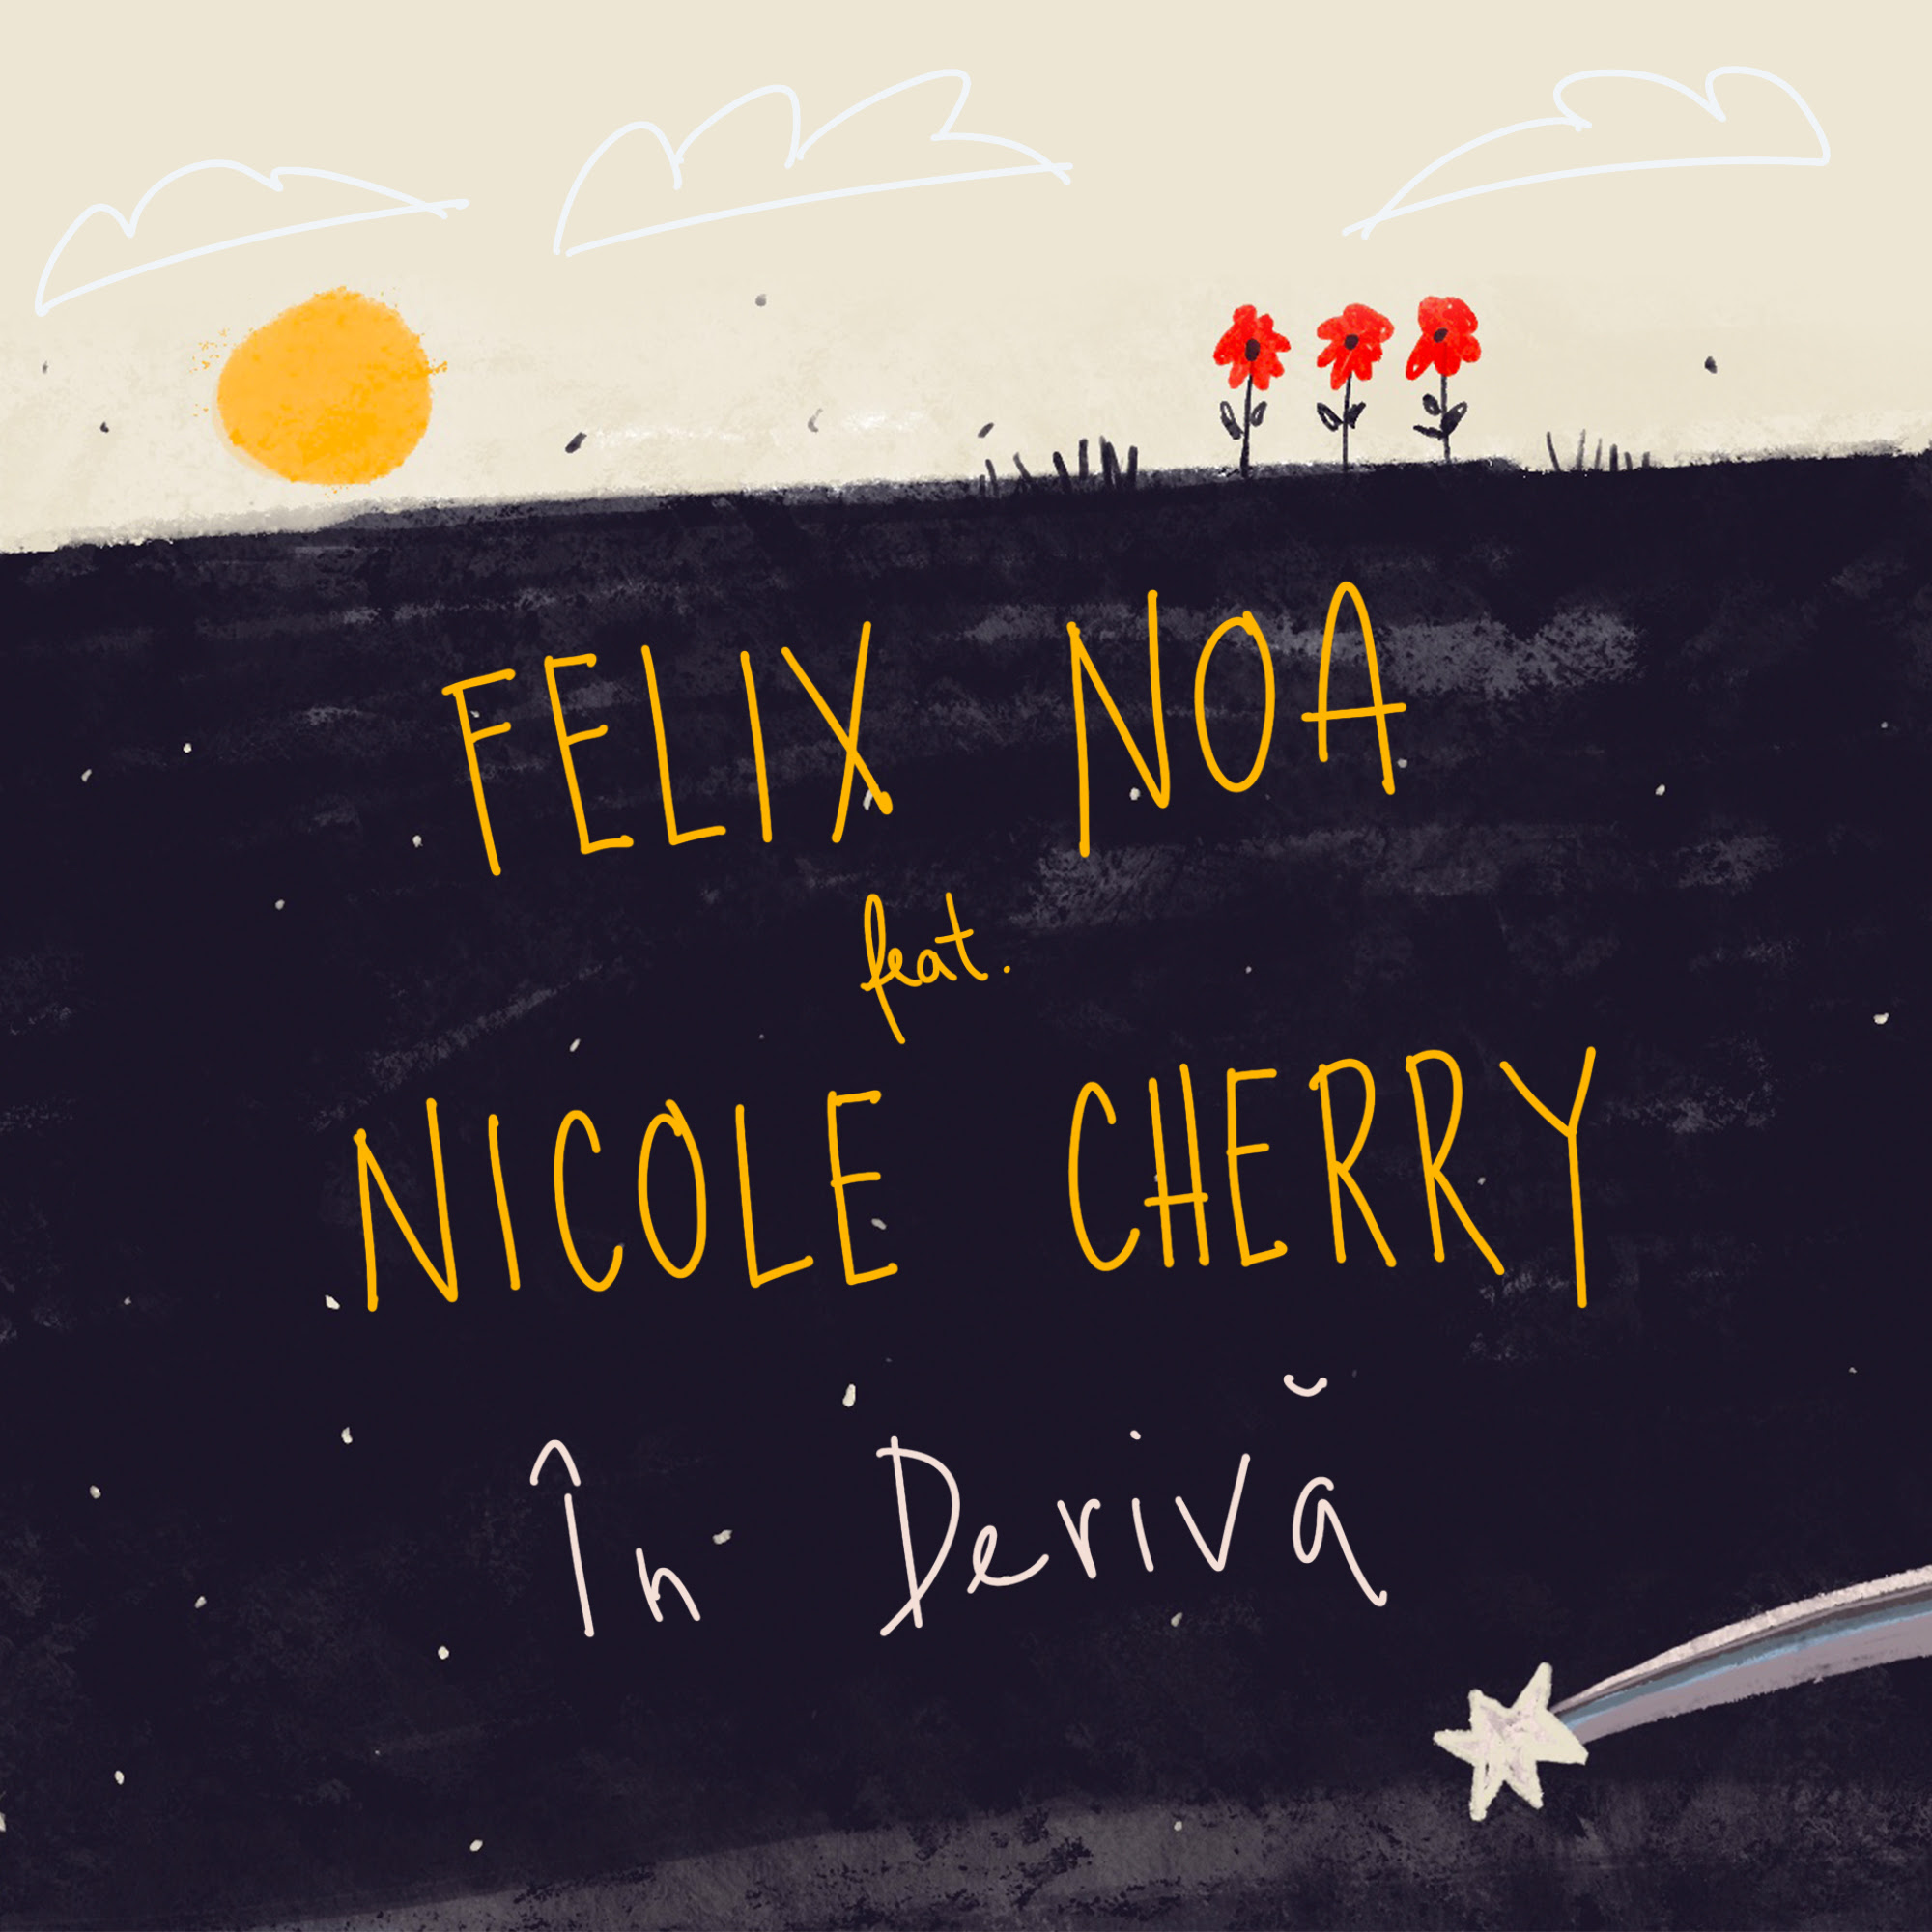 Update your playlist! Nicole Cherry și Felix Noa au lansat ”În derivă”. Enjoy it!